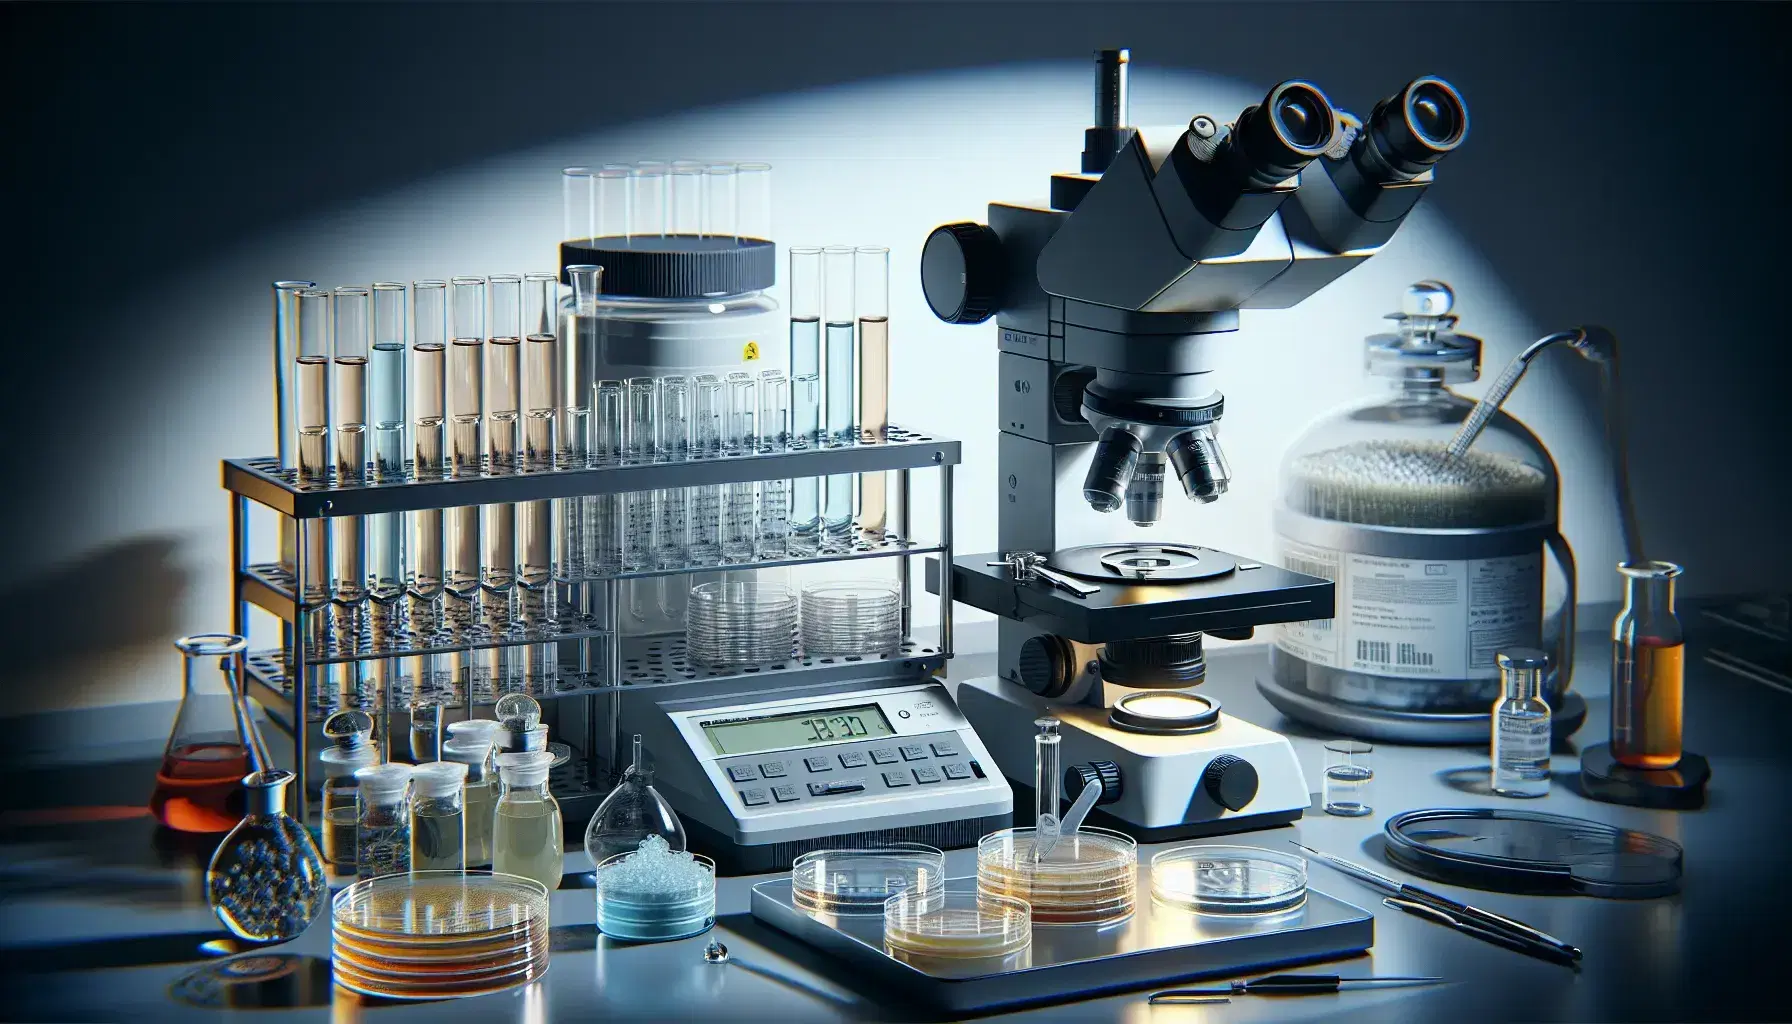 Escena de laboratorio con microscopio electrónico, Petri con medios de cultivo, tubos de ensayo con líquidos coloridos, pipeta automática y balanza analítica.